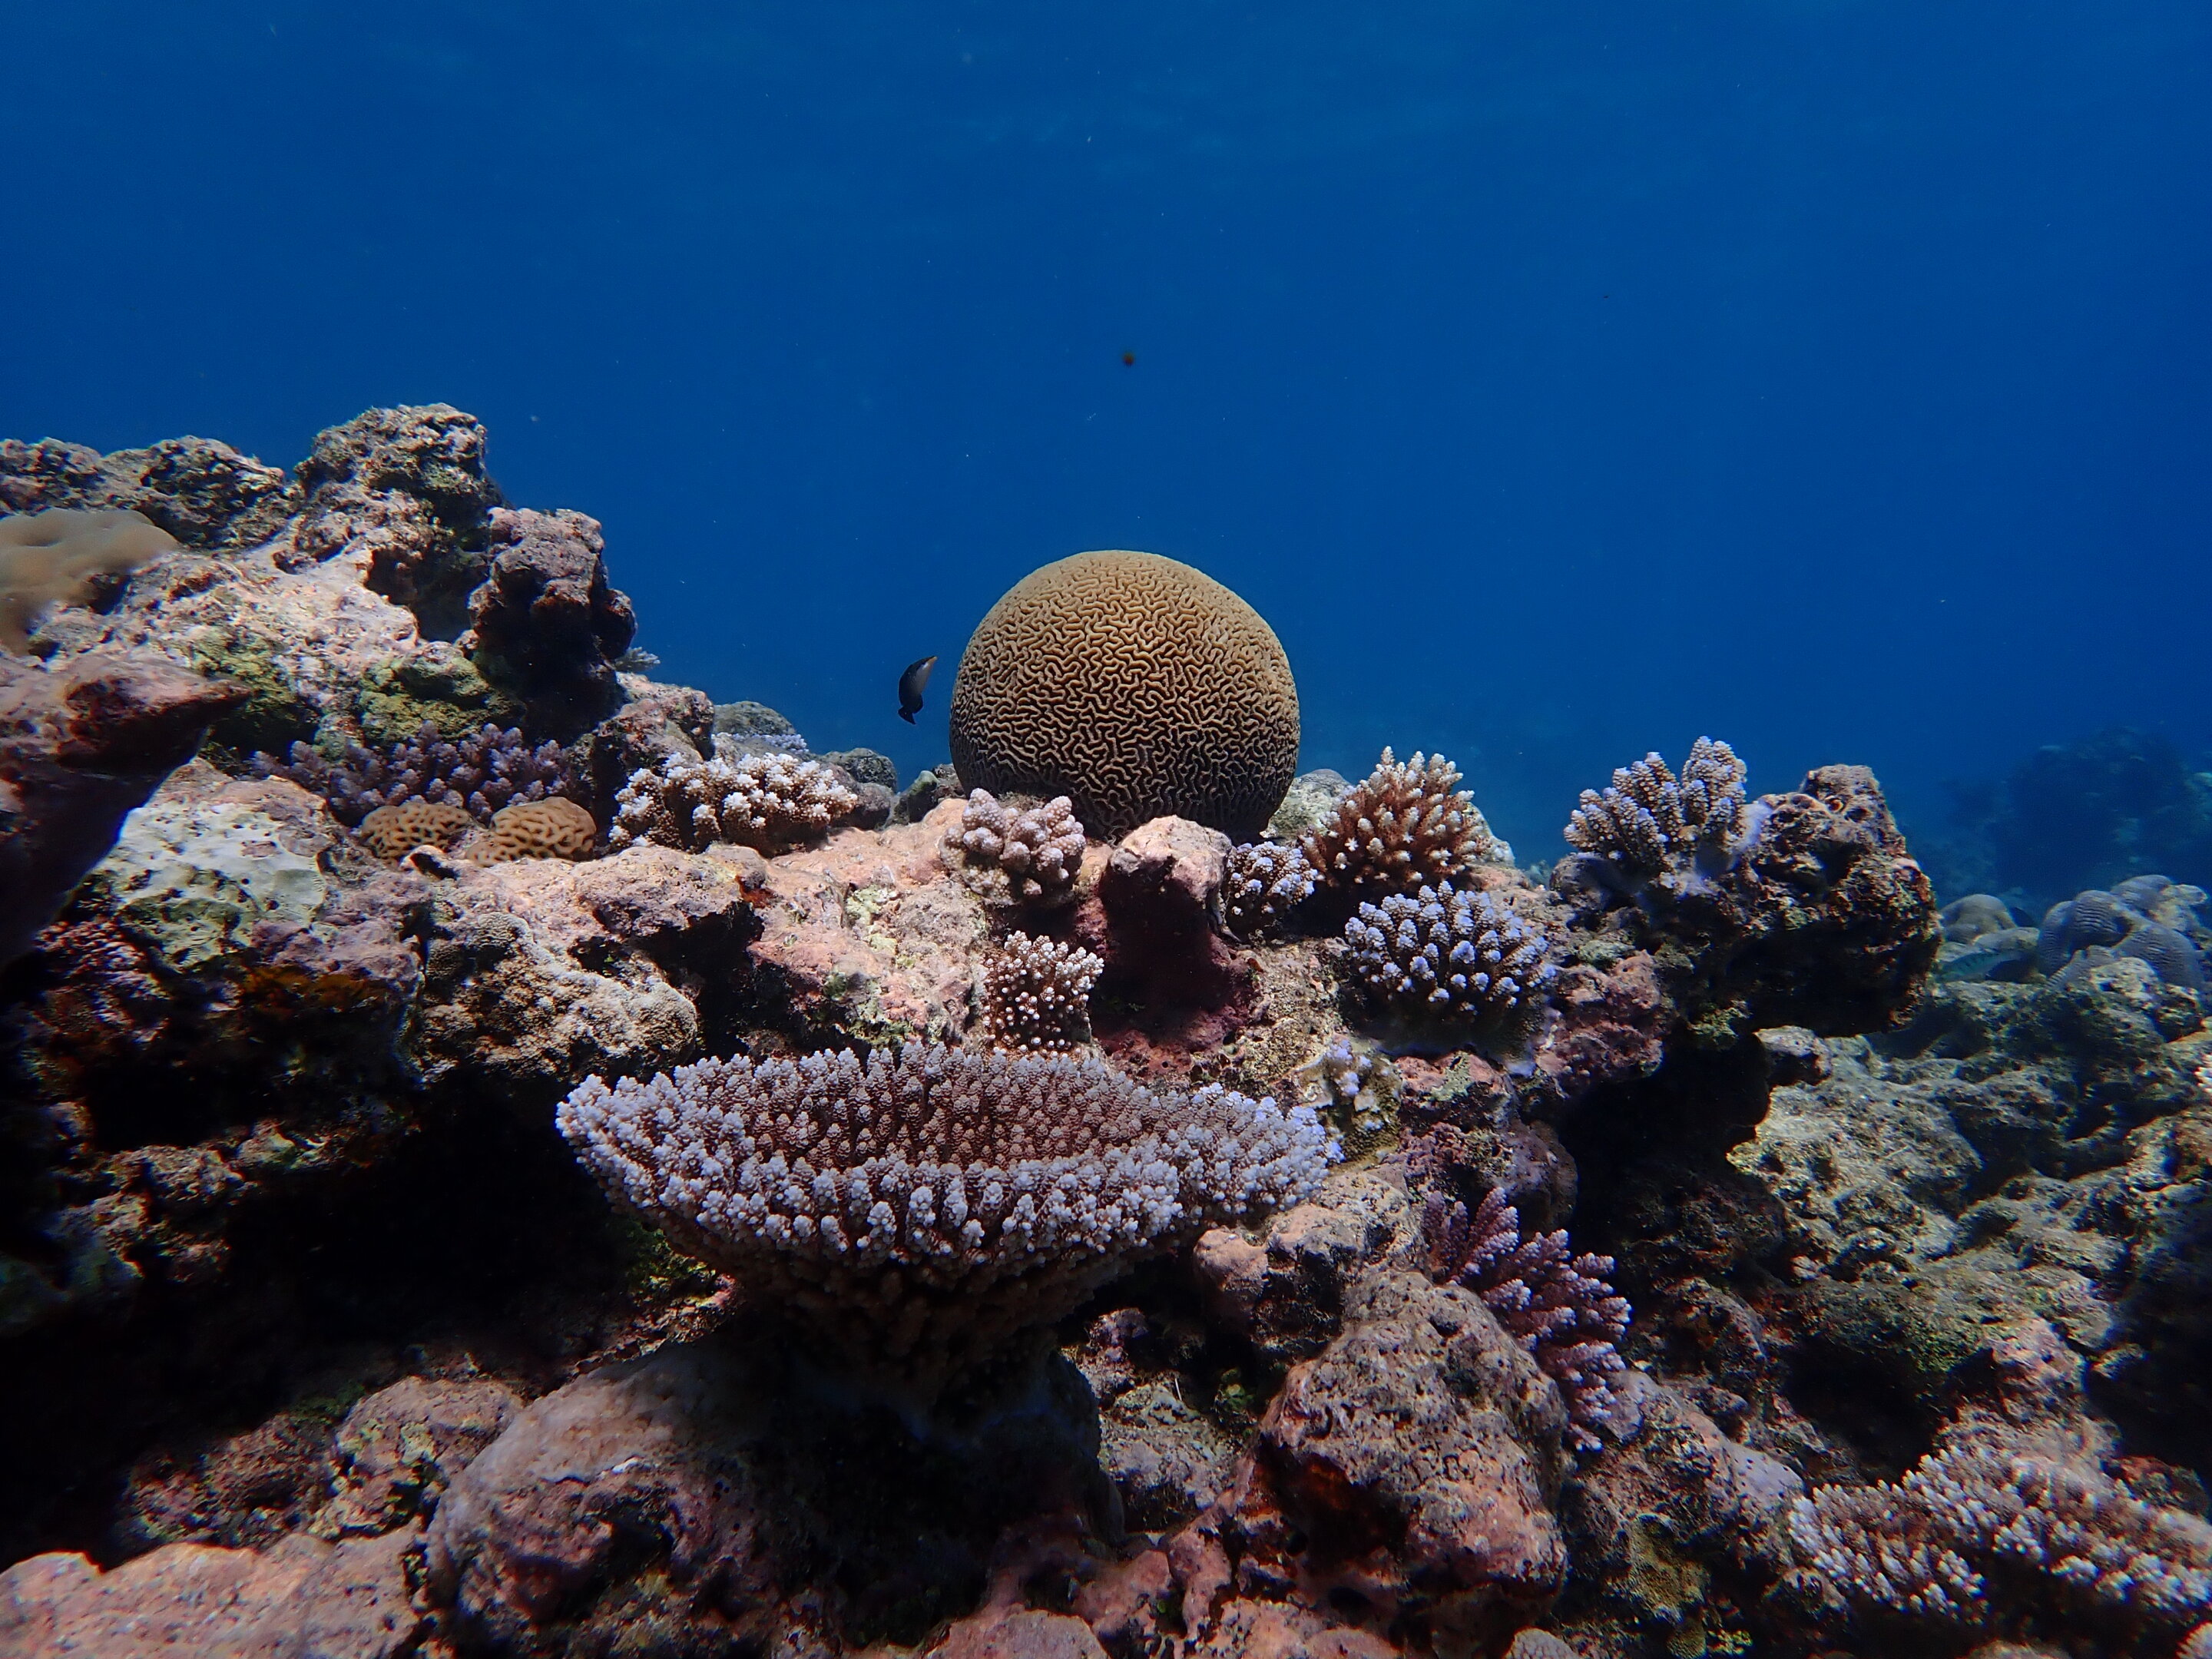 https://scx2.b-cdn.net/gfx/news/hires/2023/pacific-coral-reef-sho.jpg